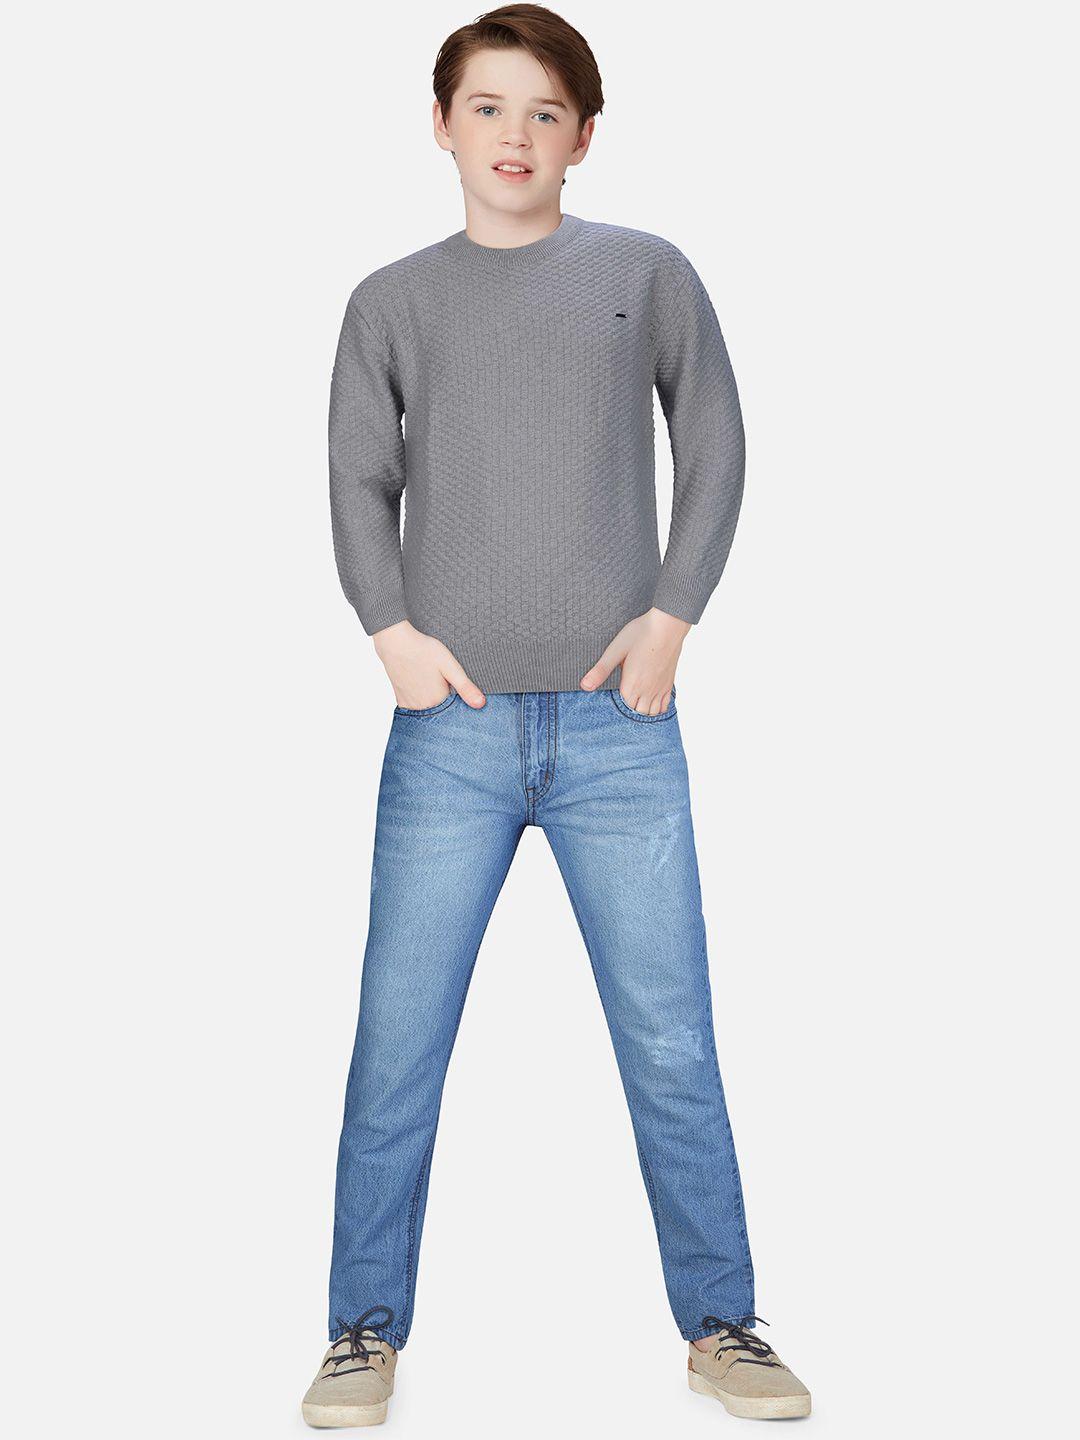 gini-and-jony-boys-self-design-wool-pullover-sweater